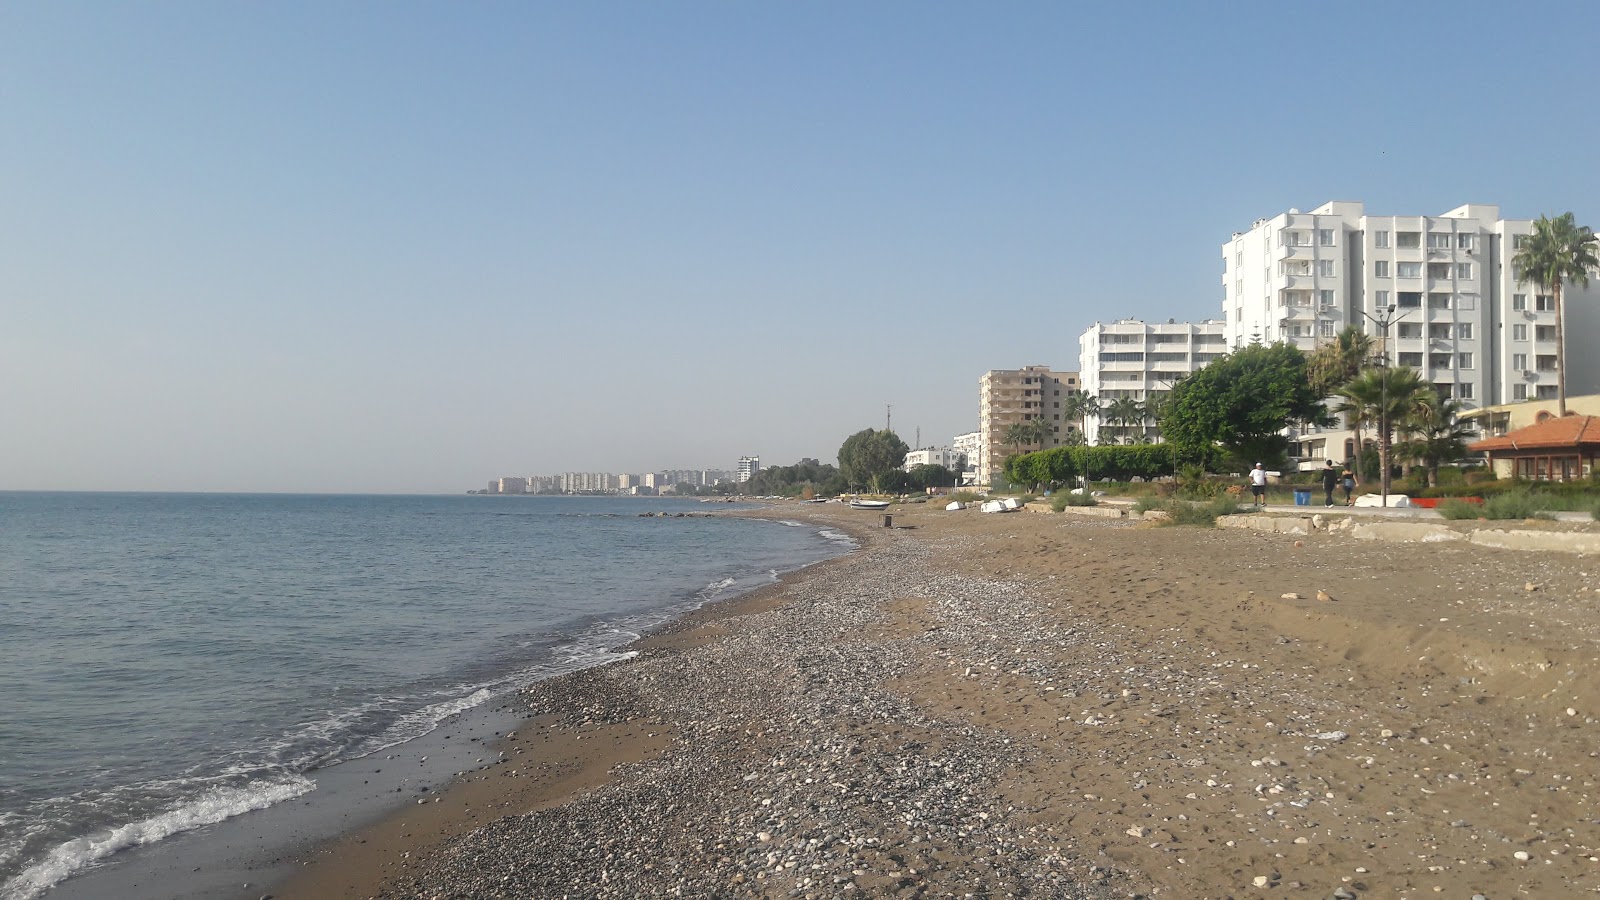 Photo of Tece Sahil beach with bright sand surface